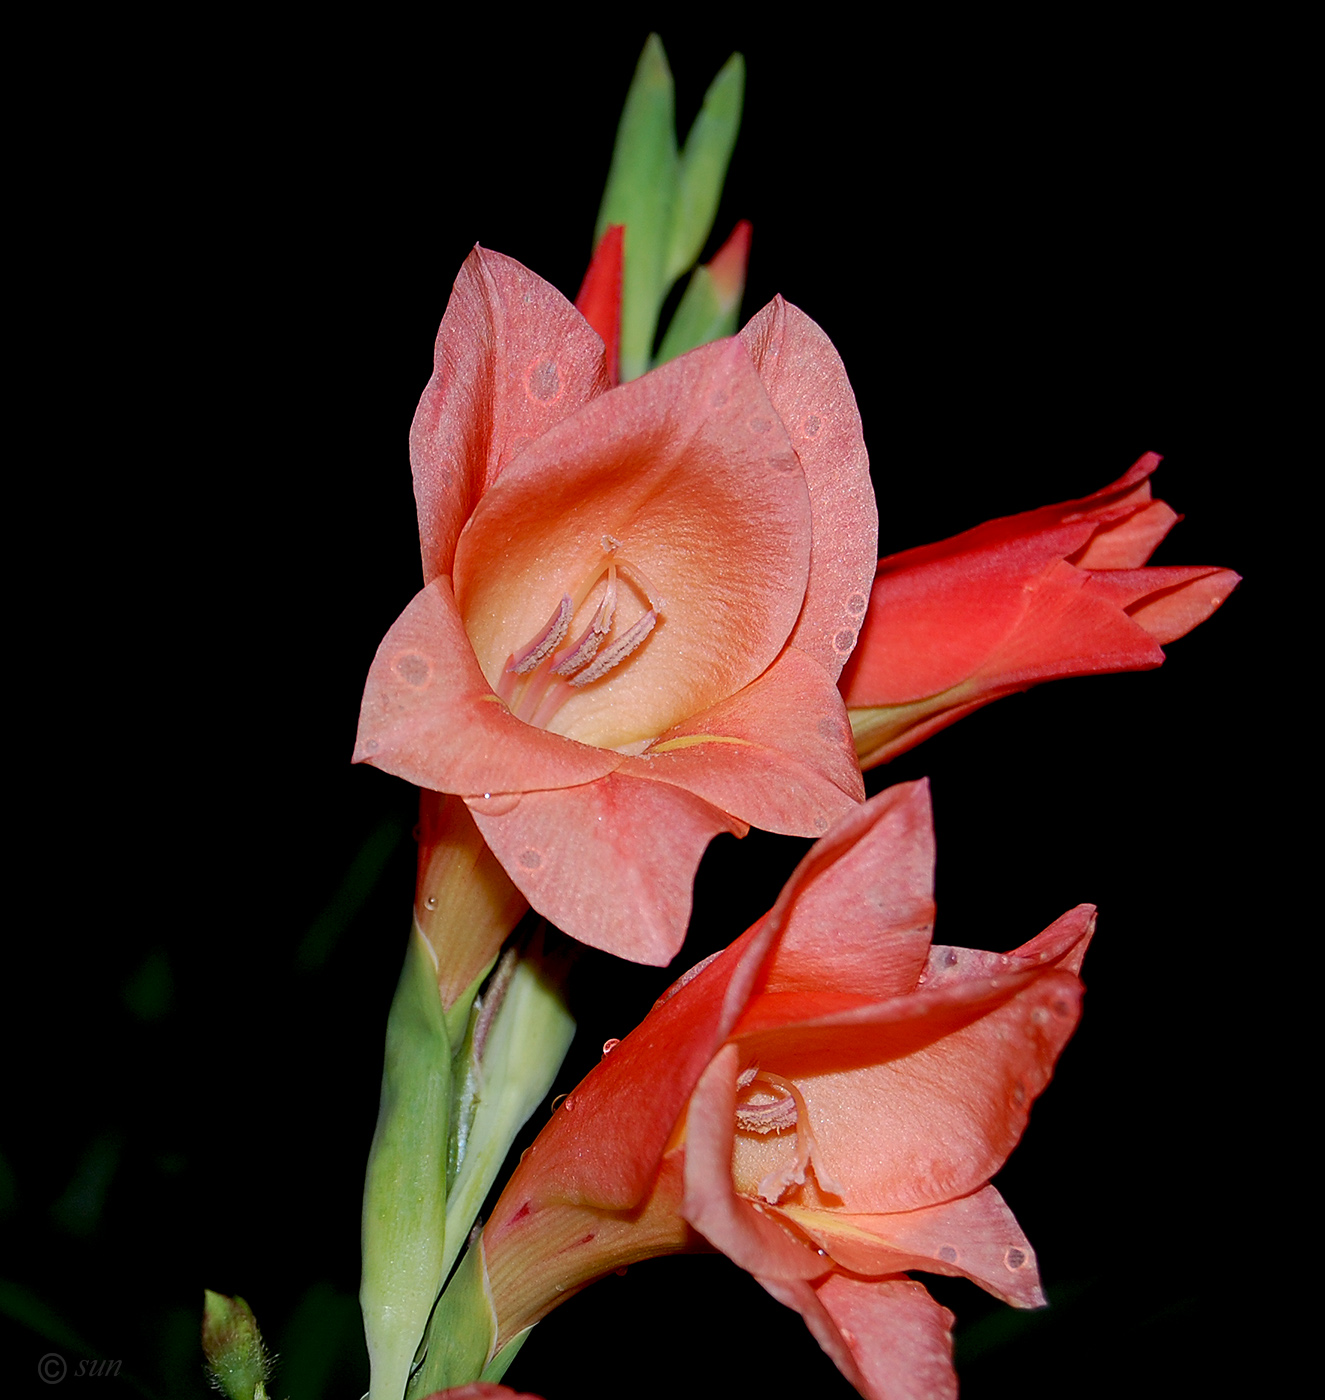 Image of genus Gladiolus specimen.